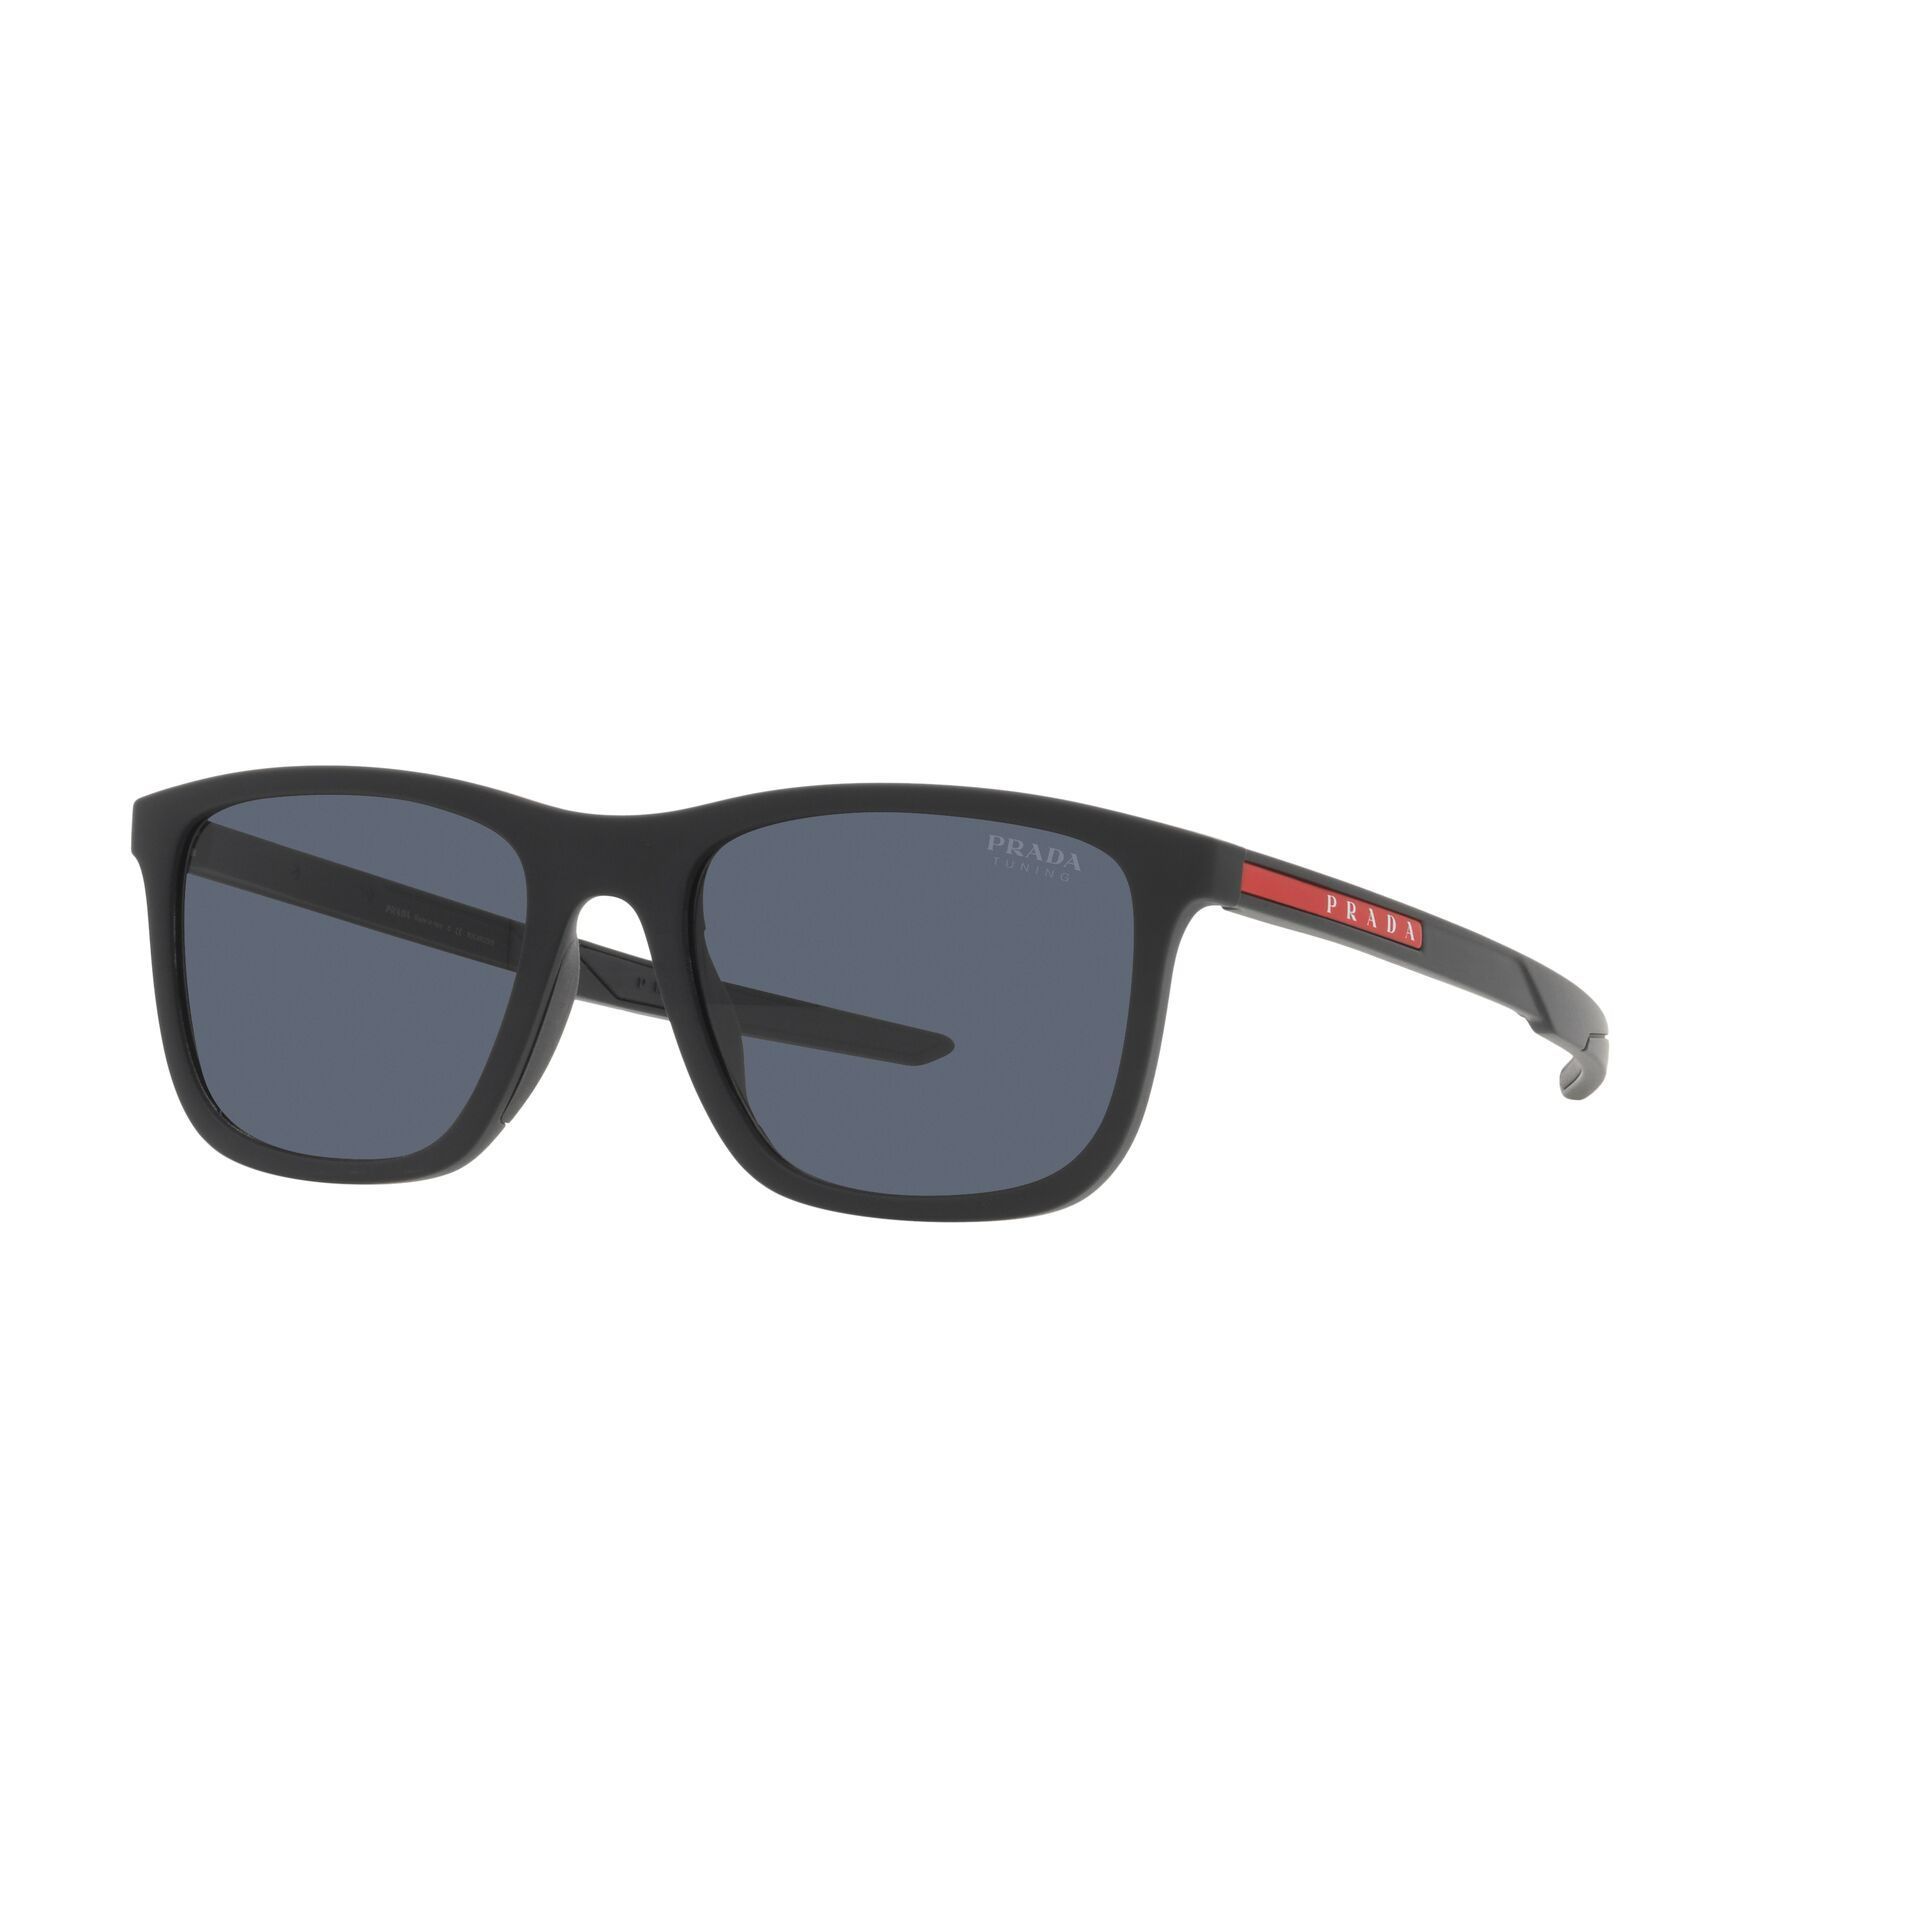 PS 10WS Square Sunglasses DG009R - size 54